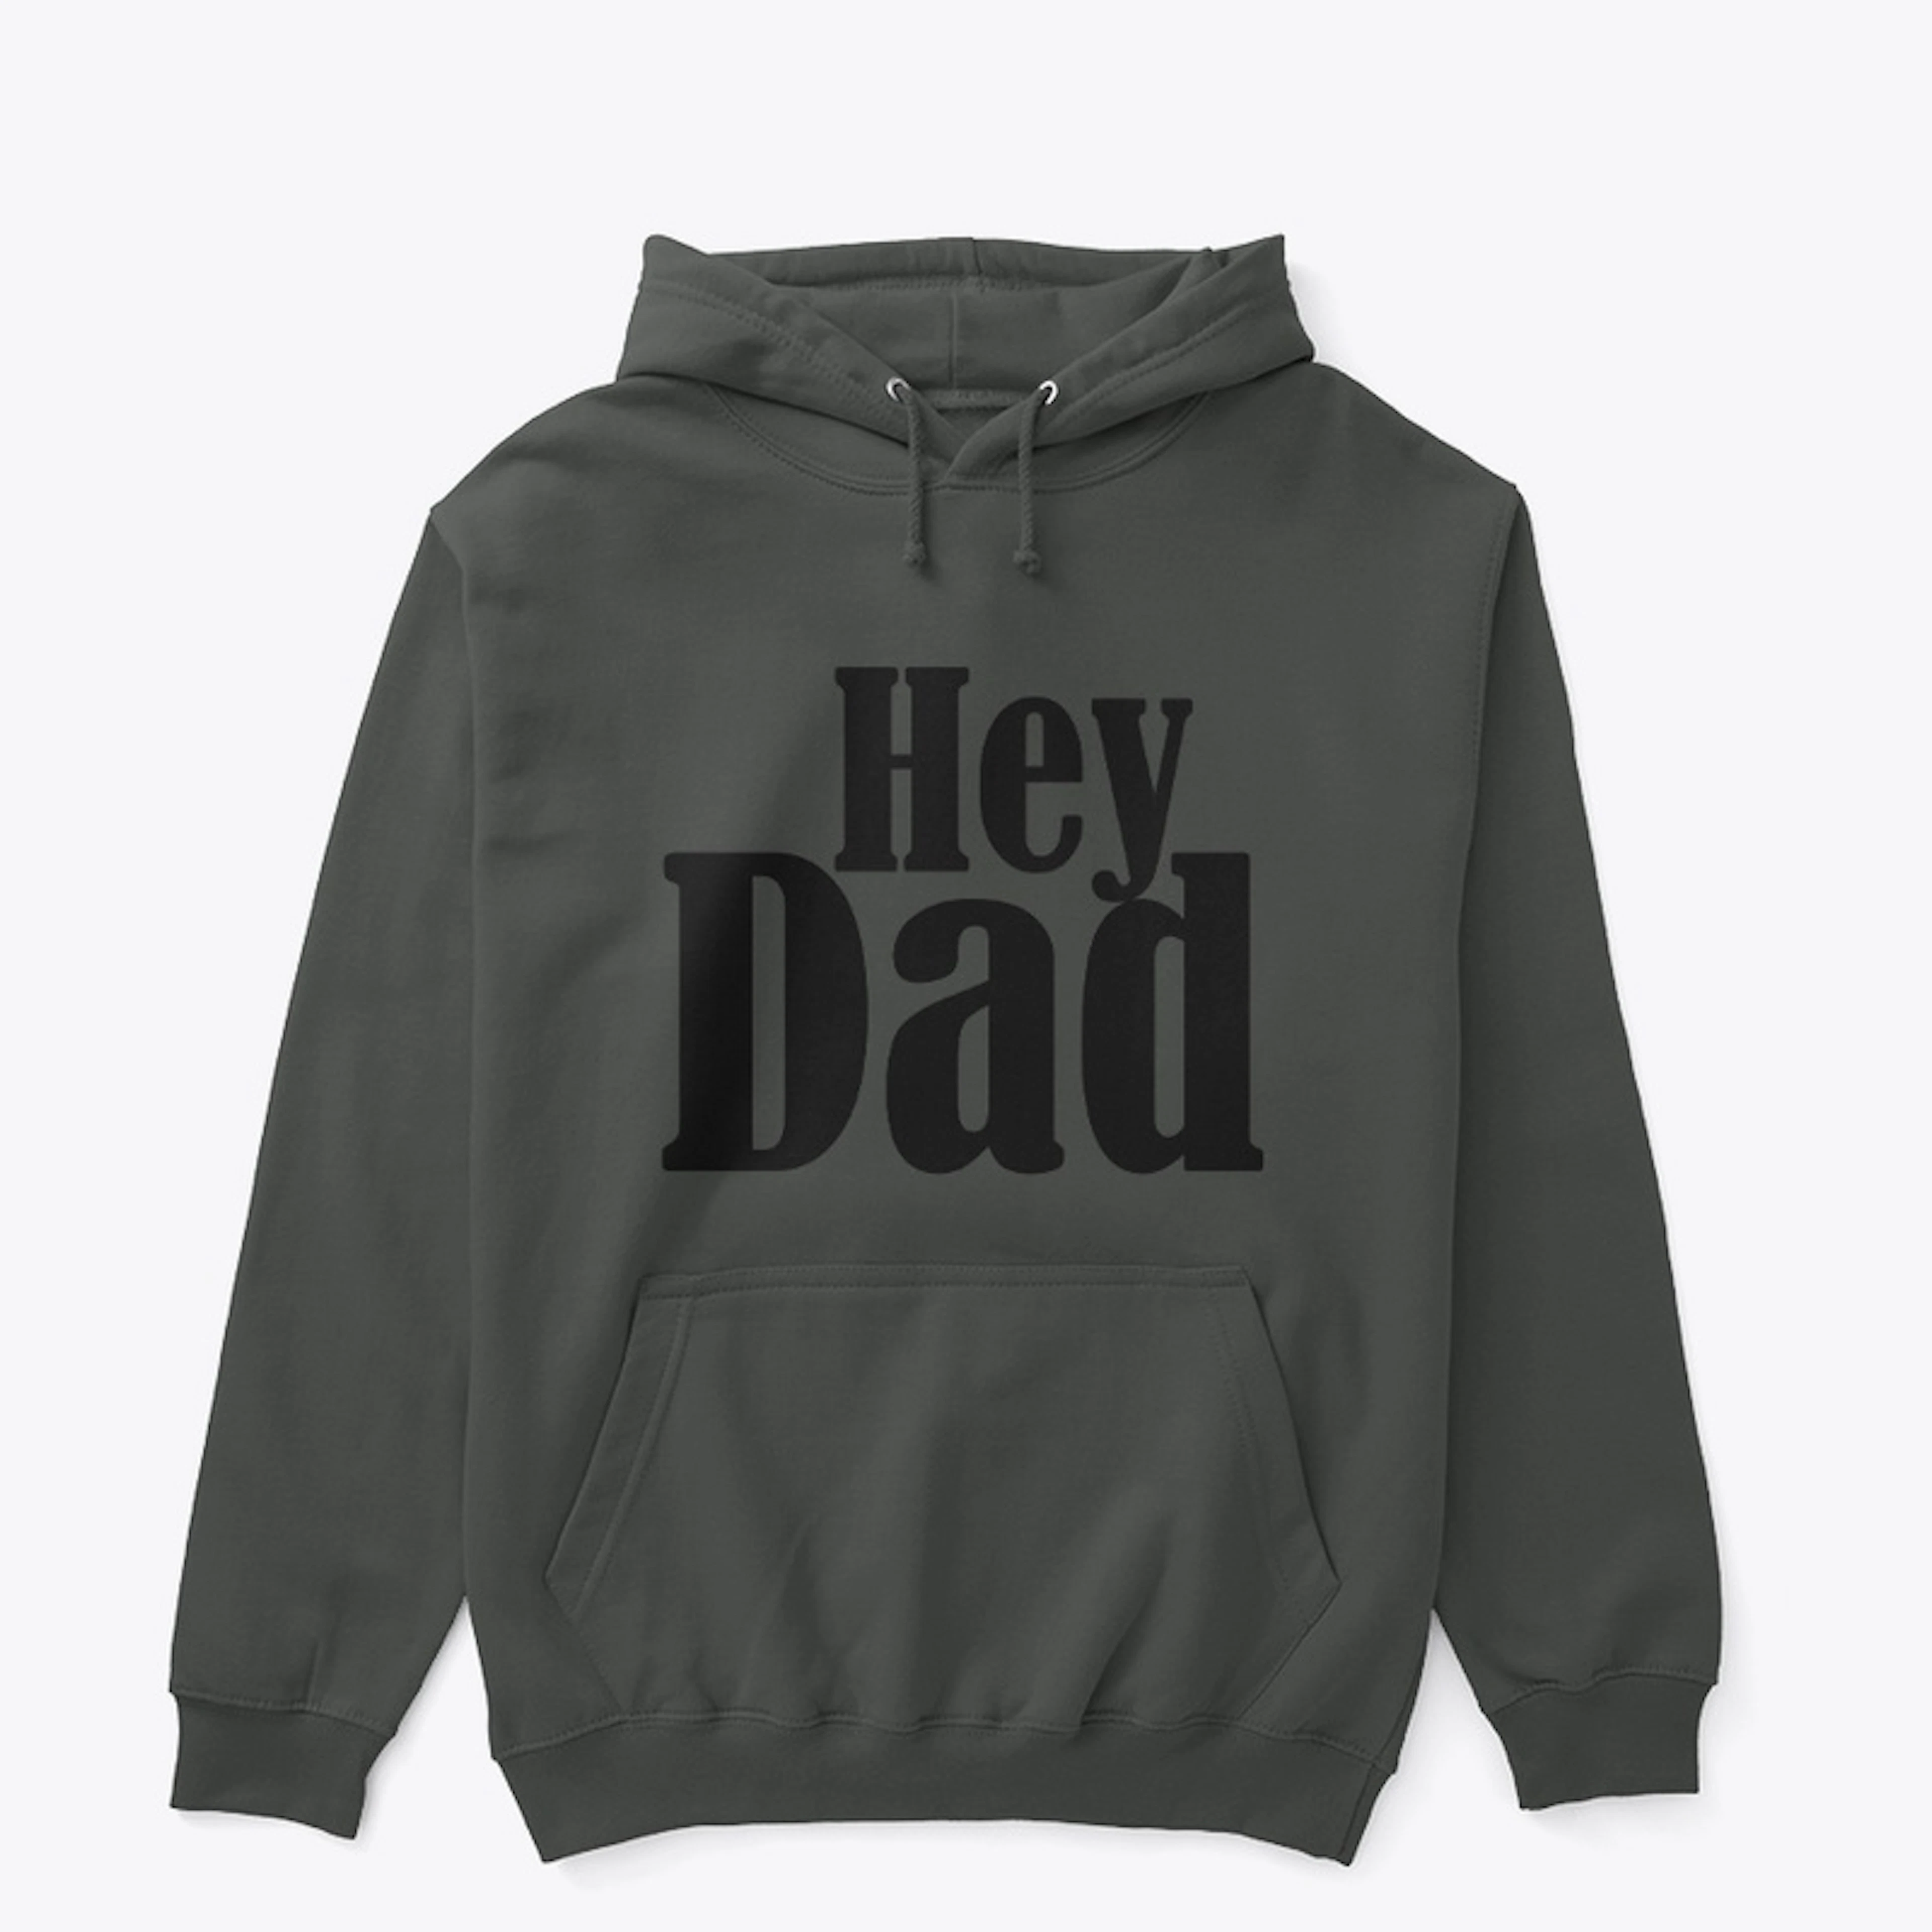 Hey Dad